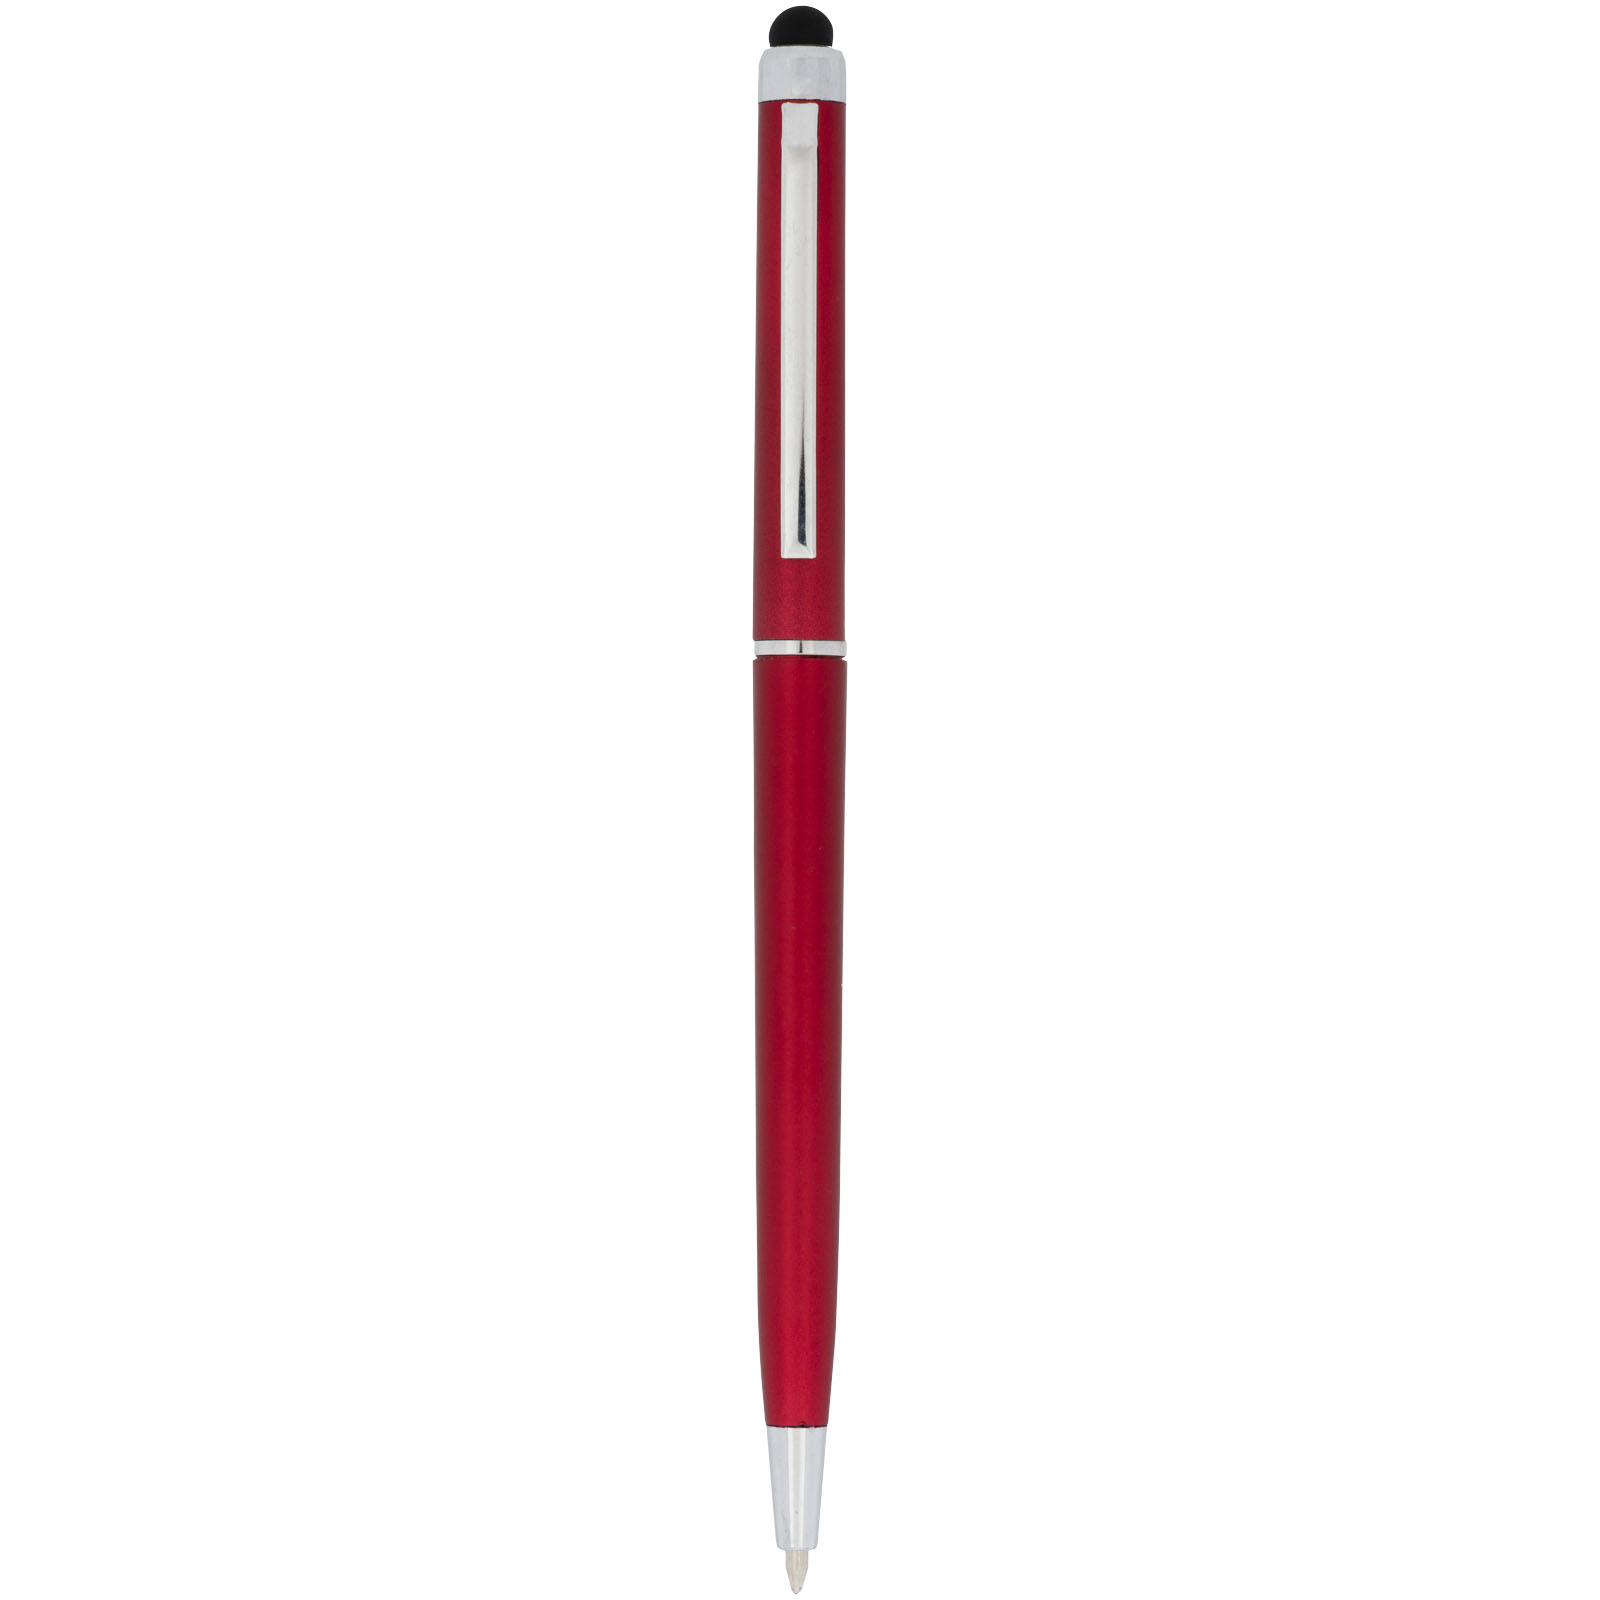 Advertising Ballpoint Pens - Valeria ABS ballpoint pen with stylus